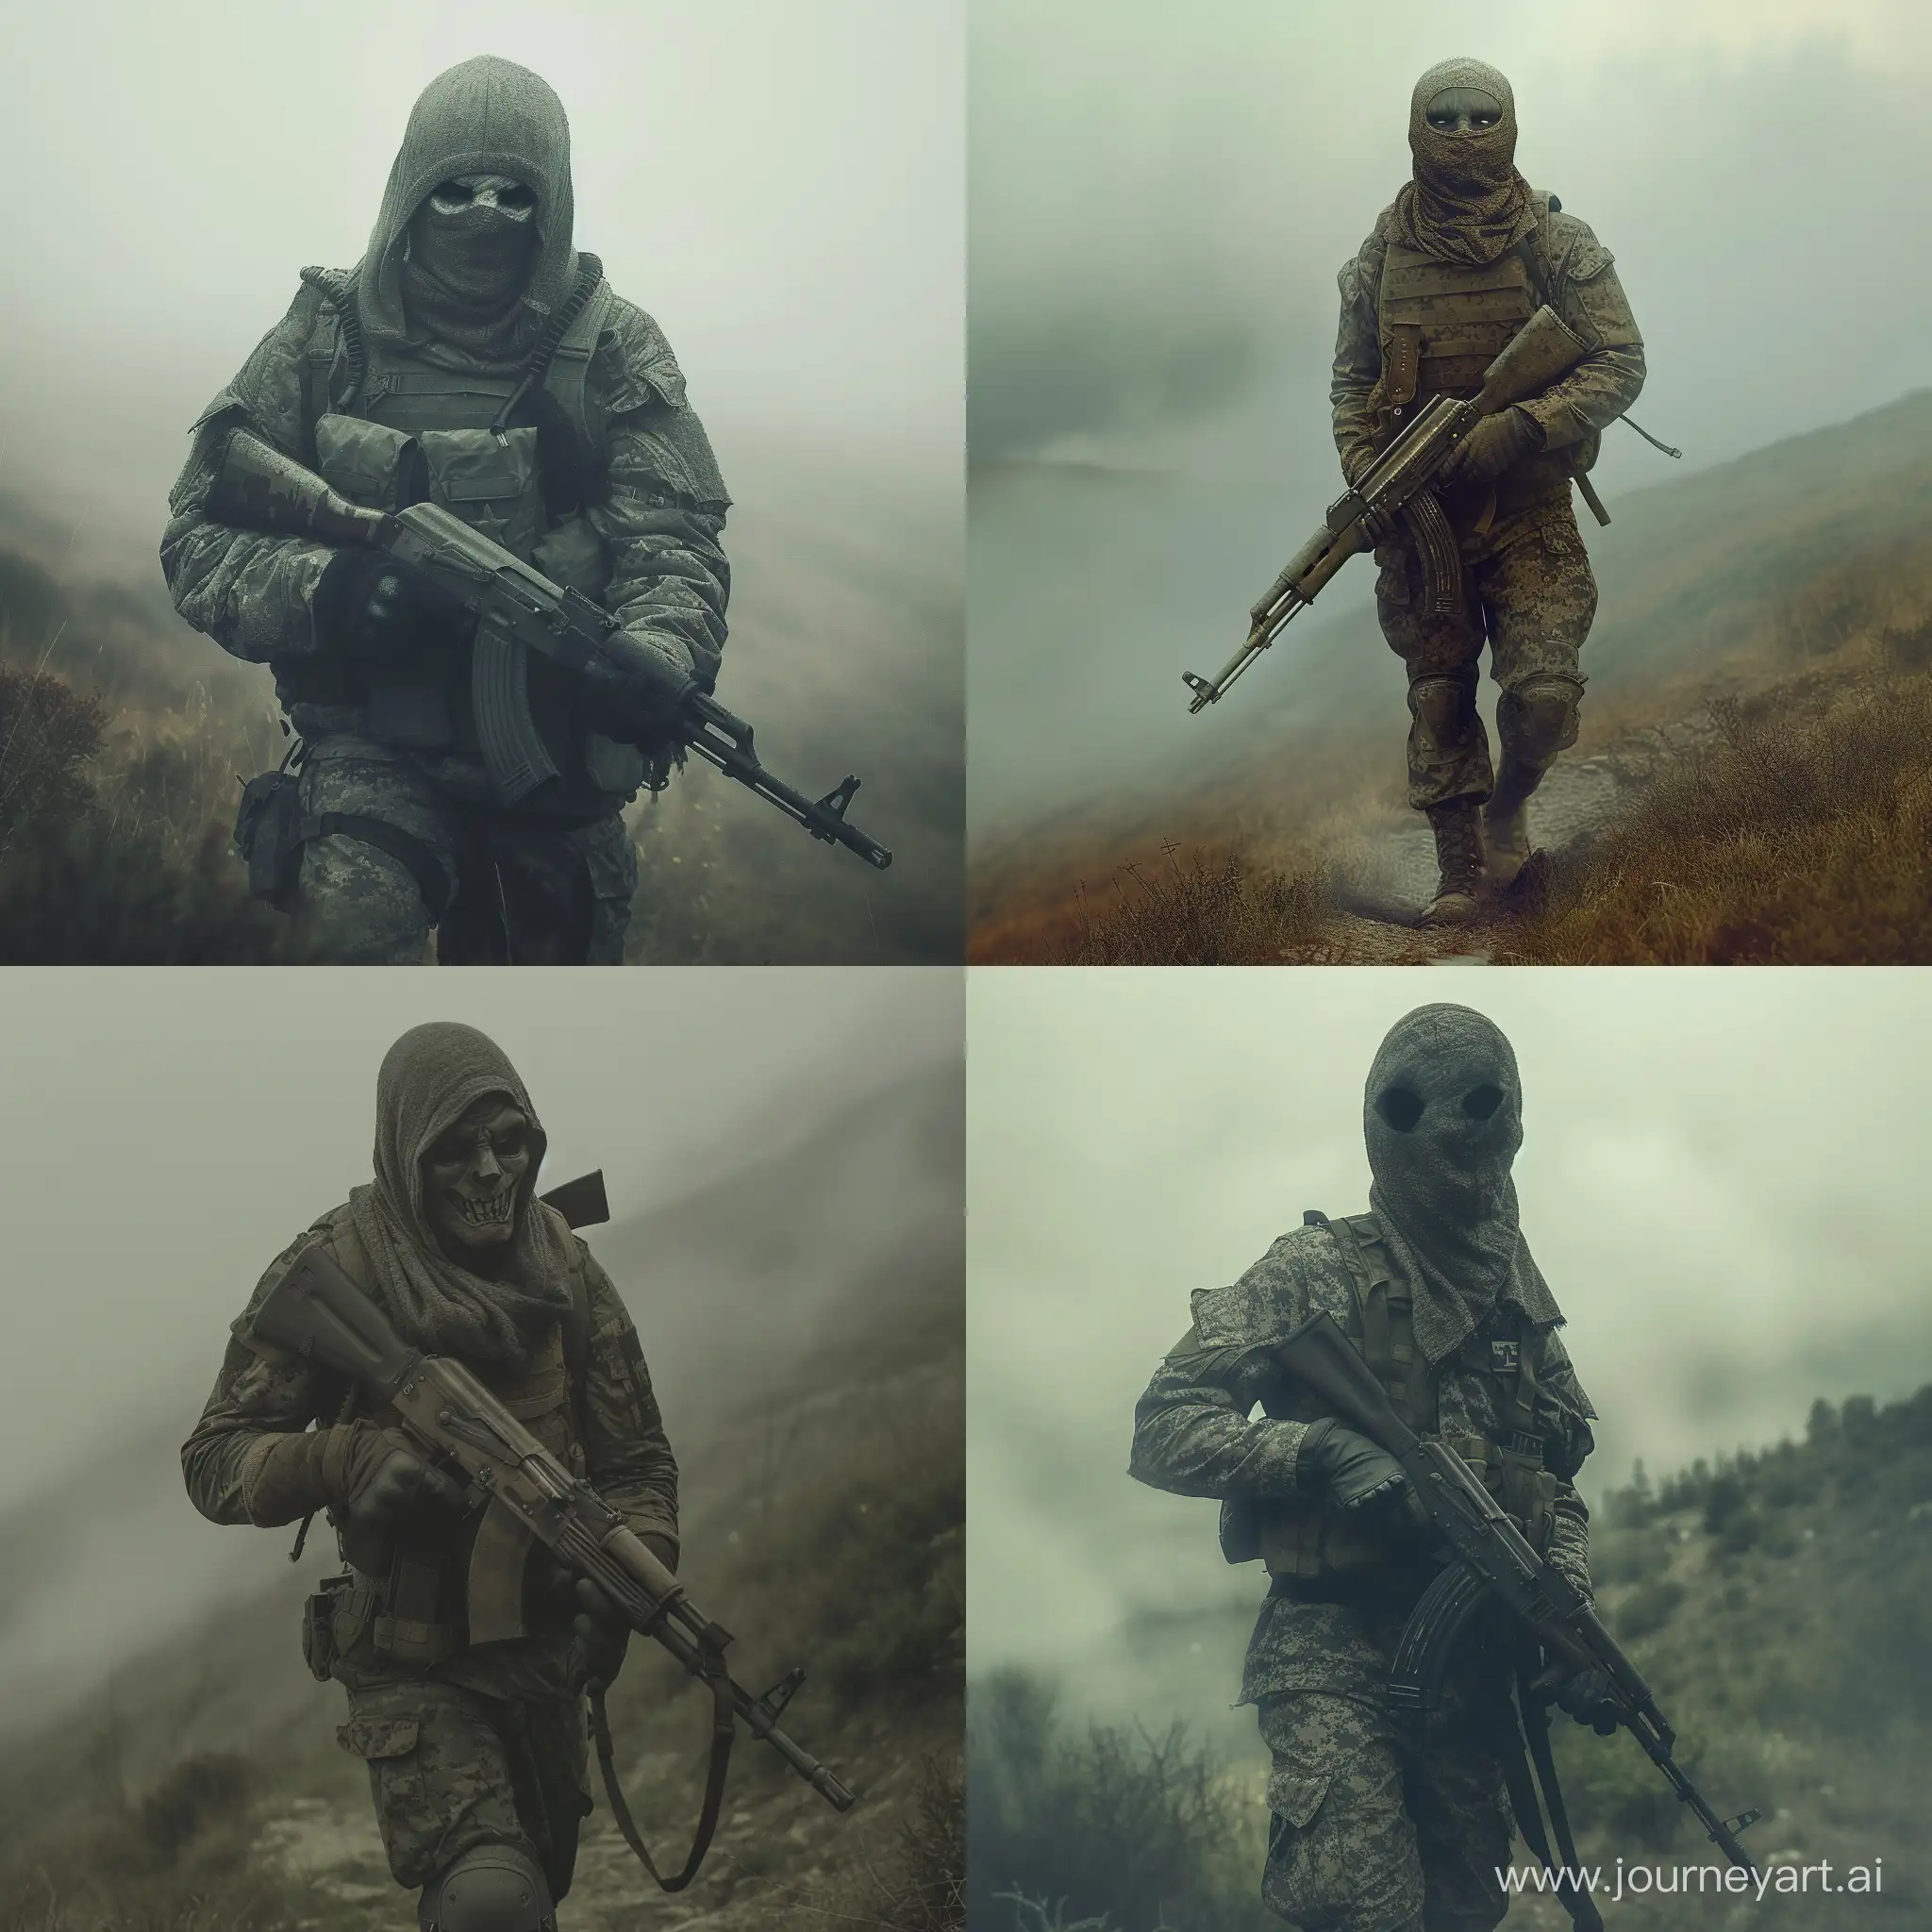 Grim-Warrior-in-Misty-Battlefield-with-AK-Rifle